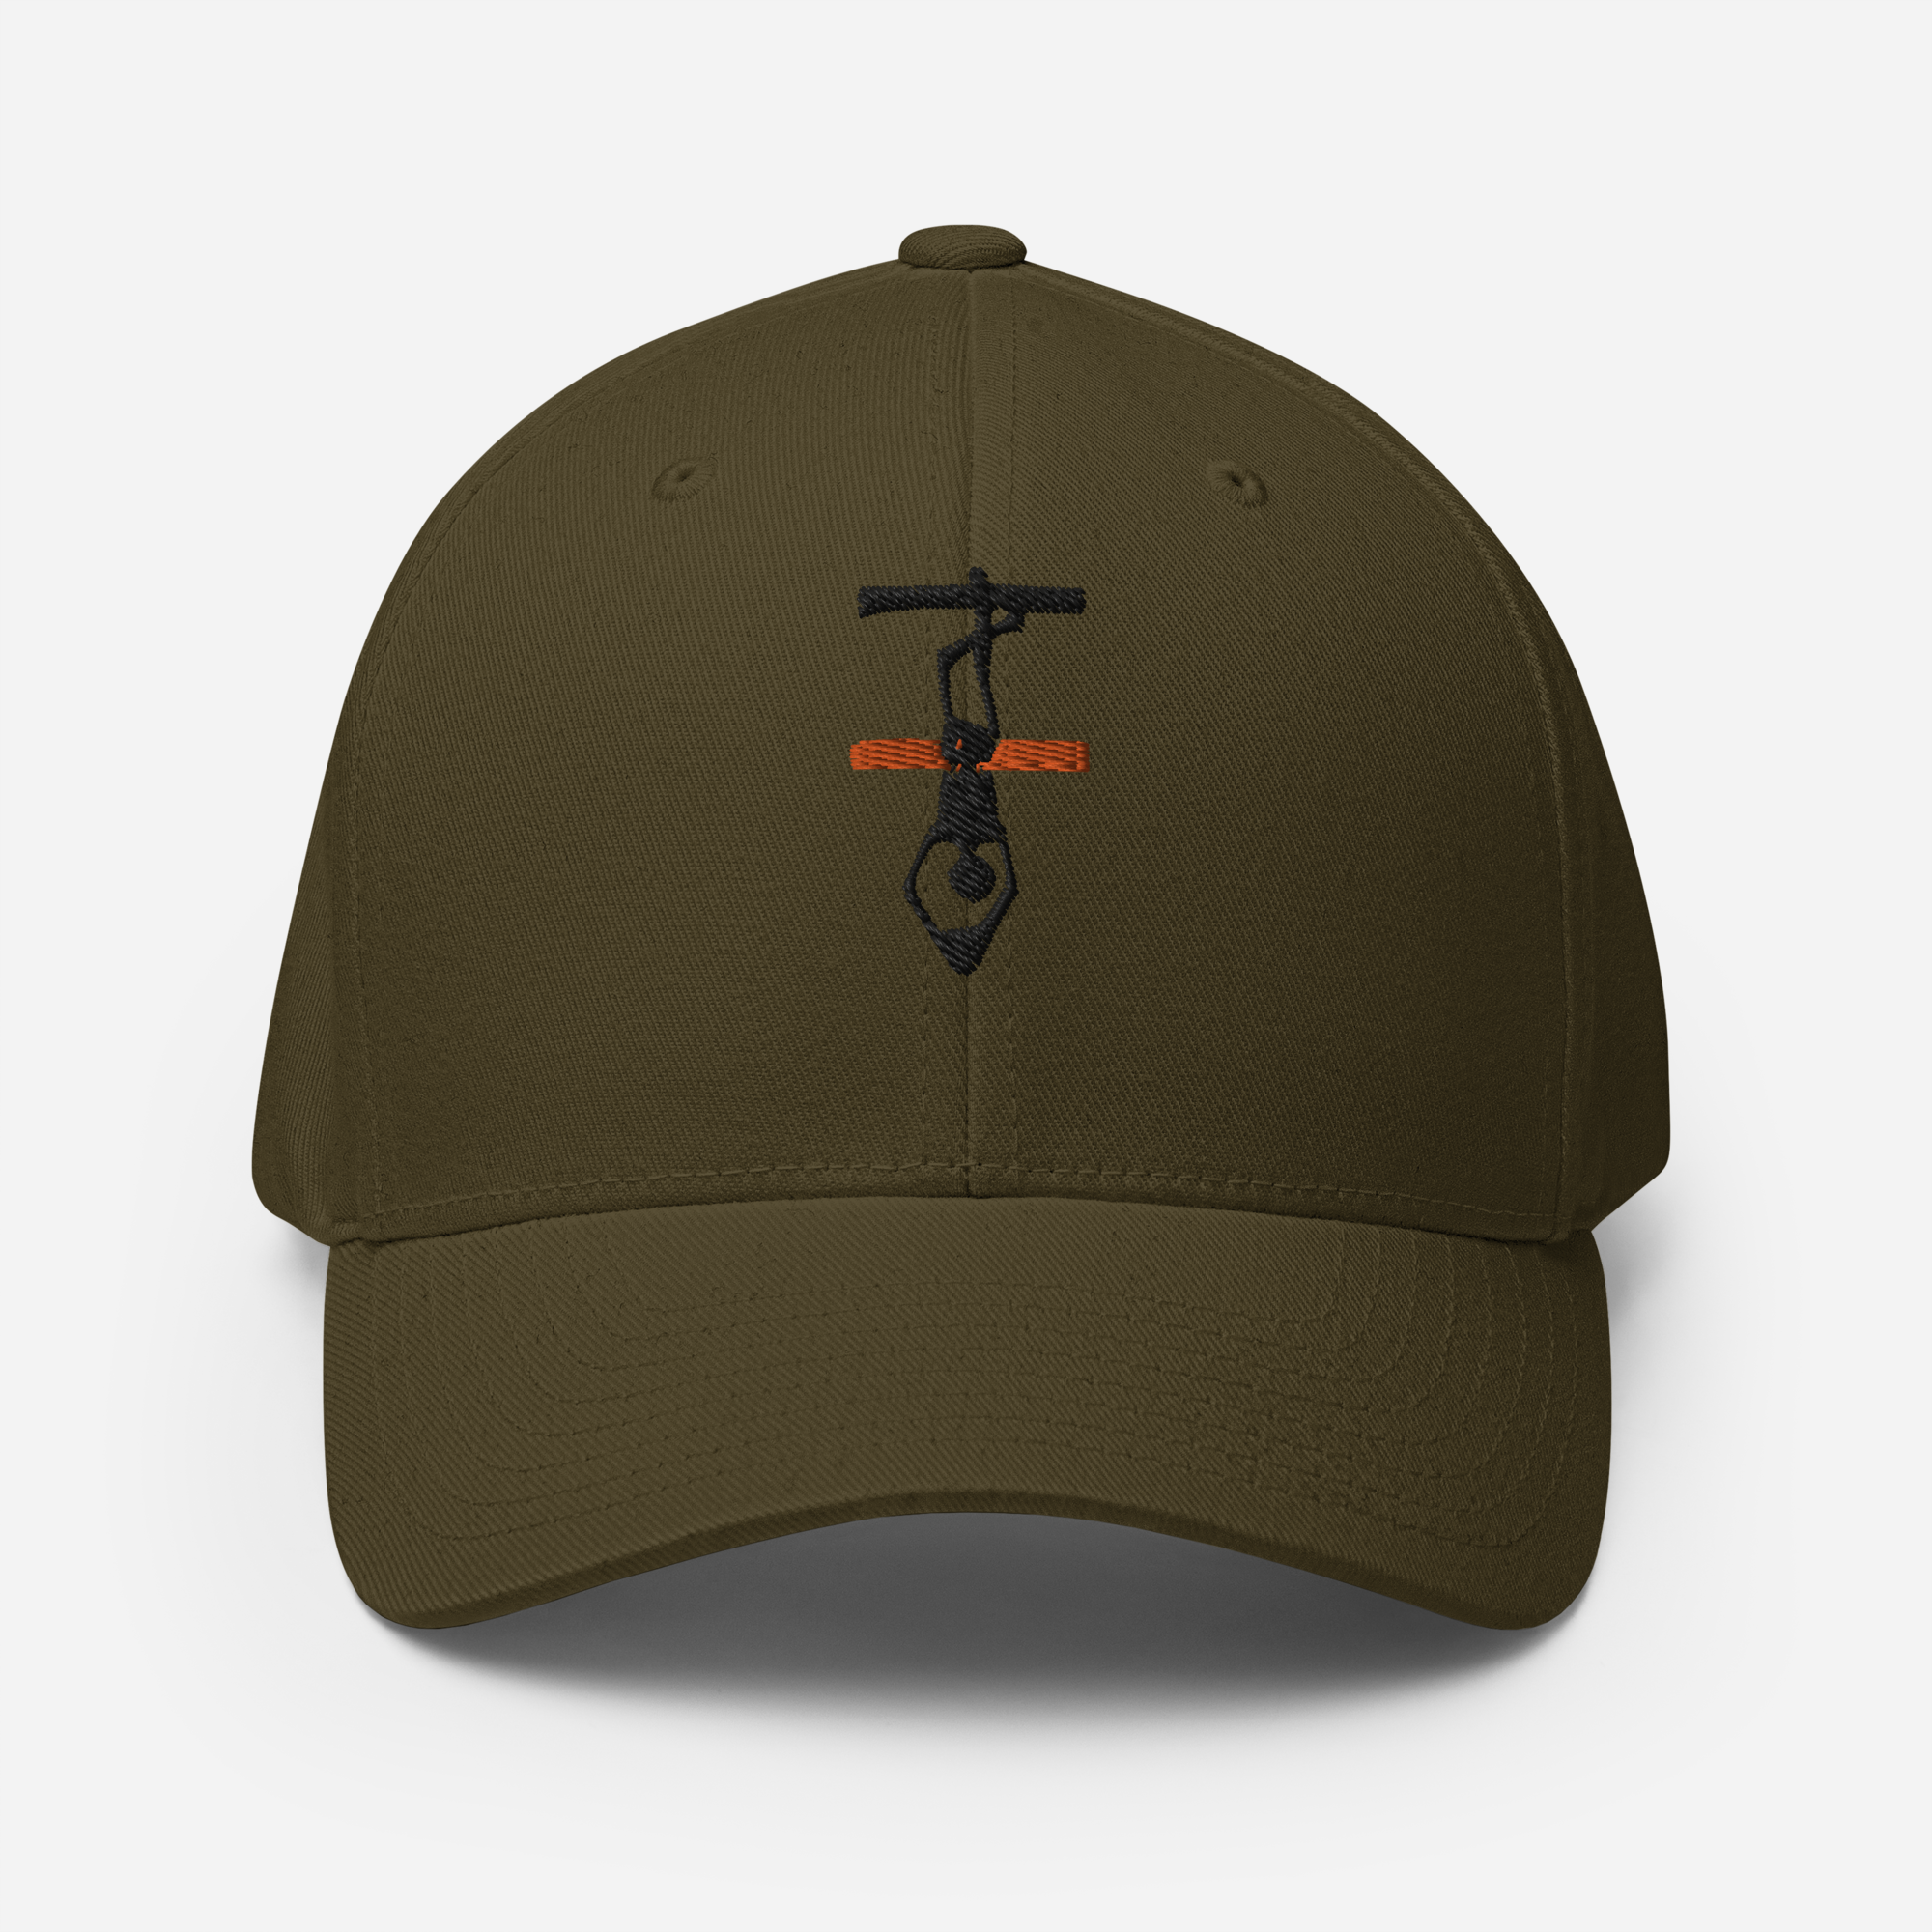 Thin Orange Line Hanged Man Structured Twill Cap - Black Logo